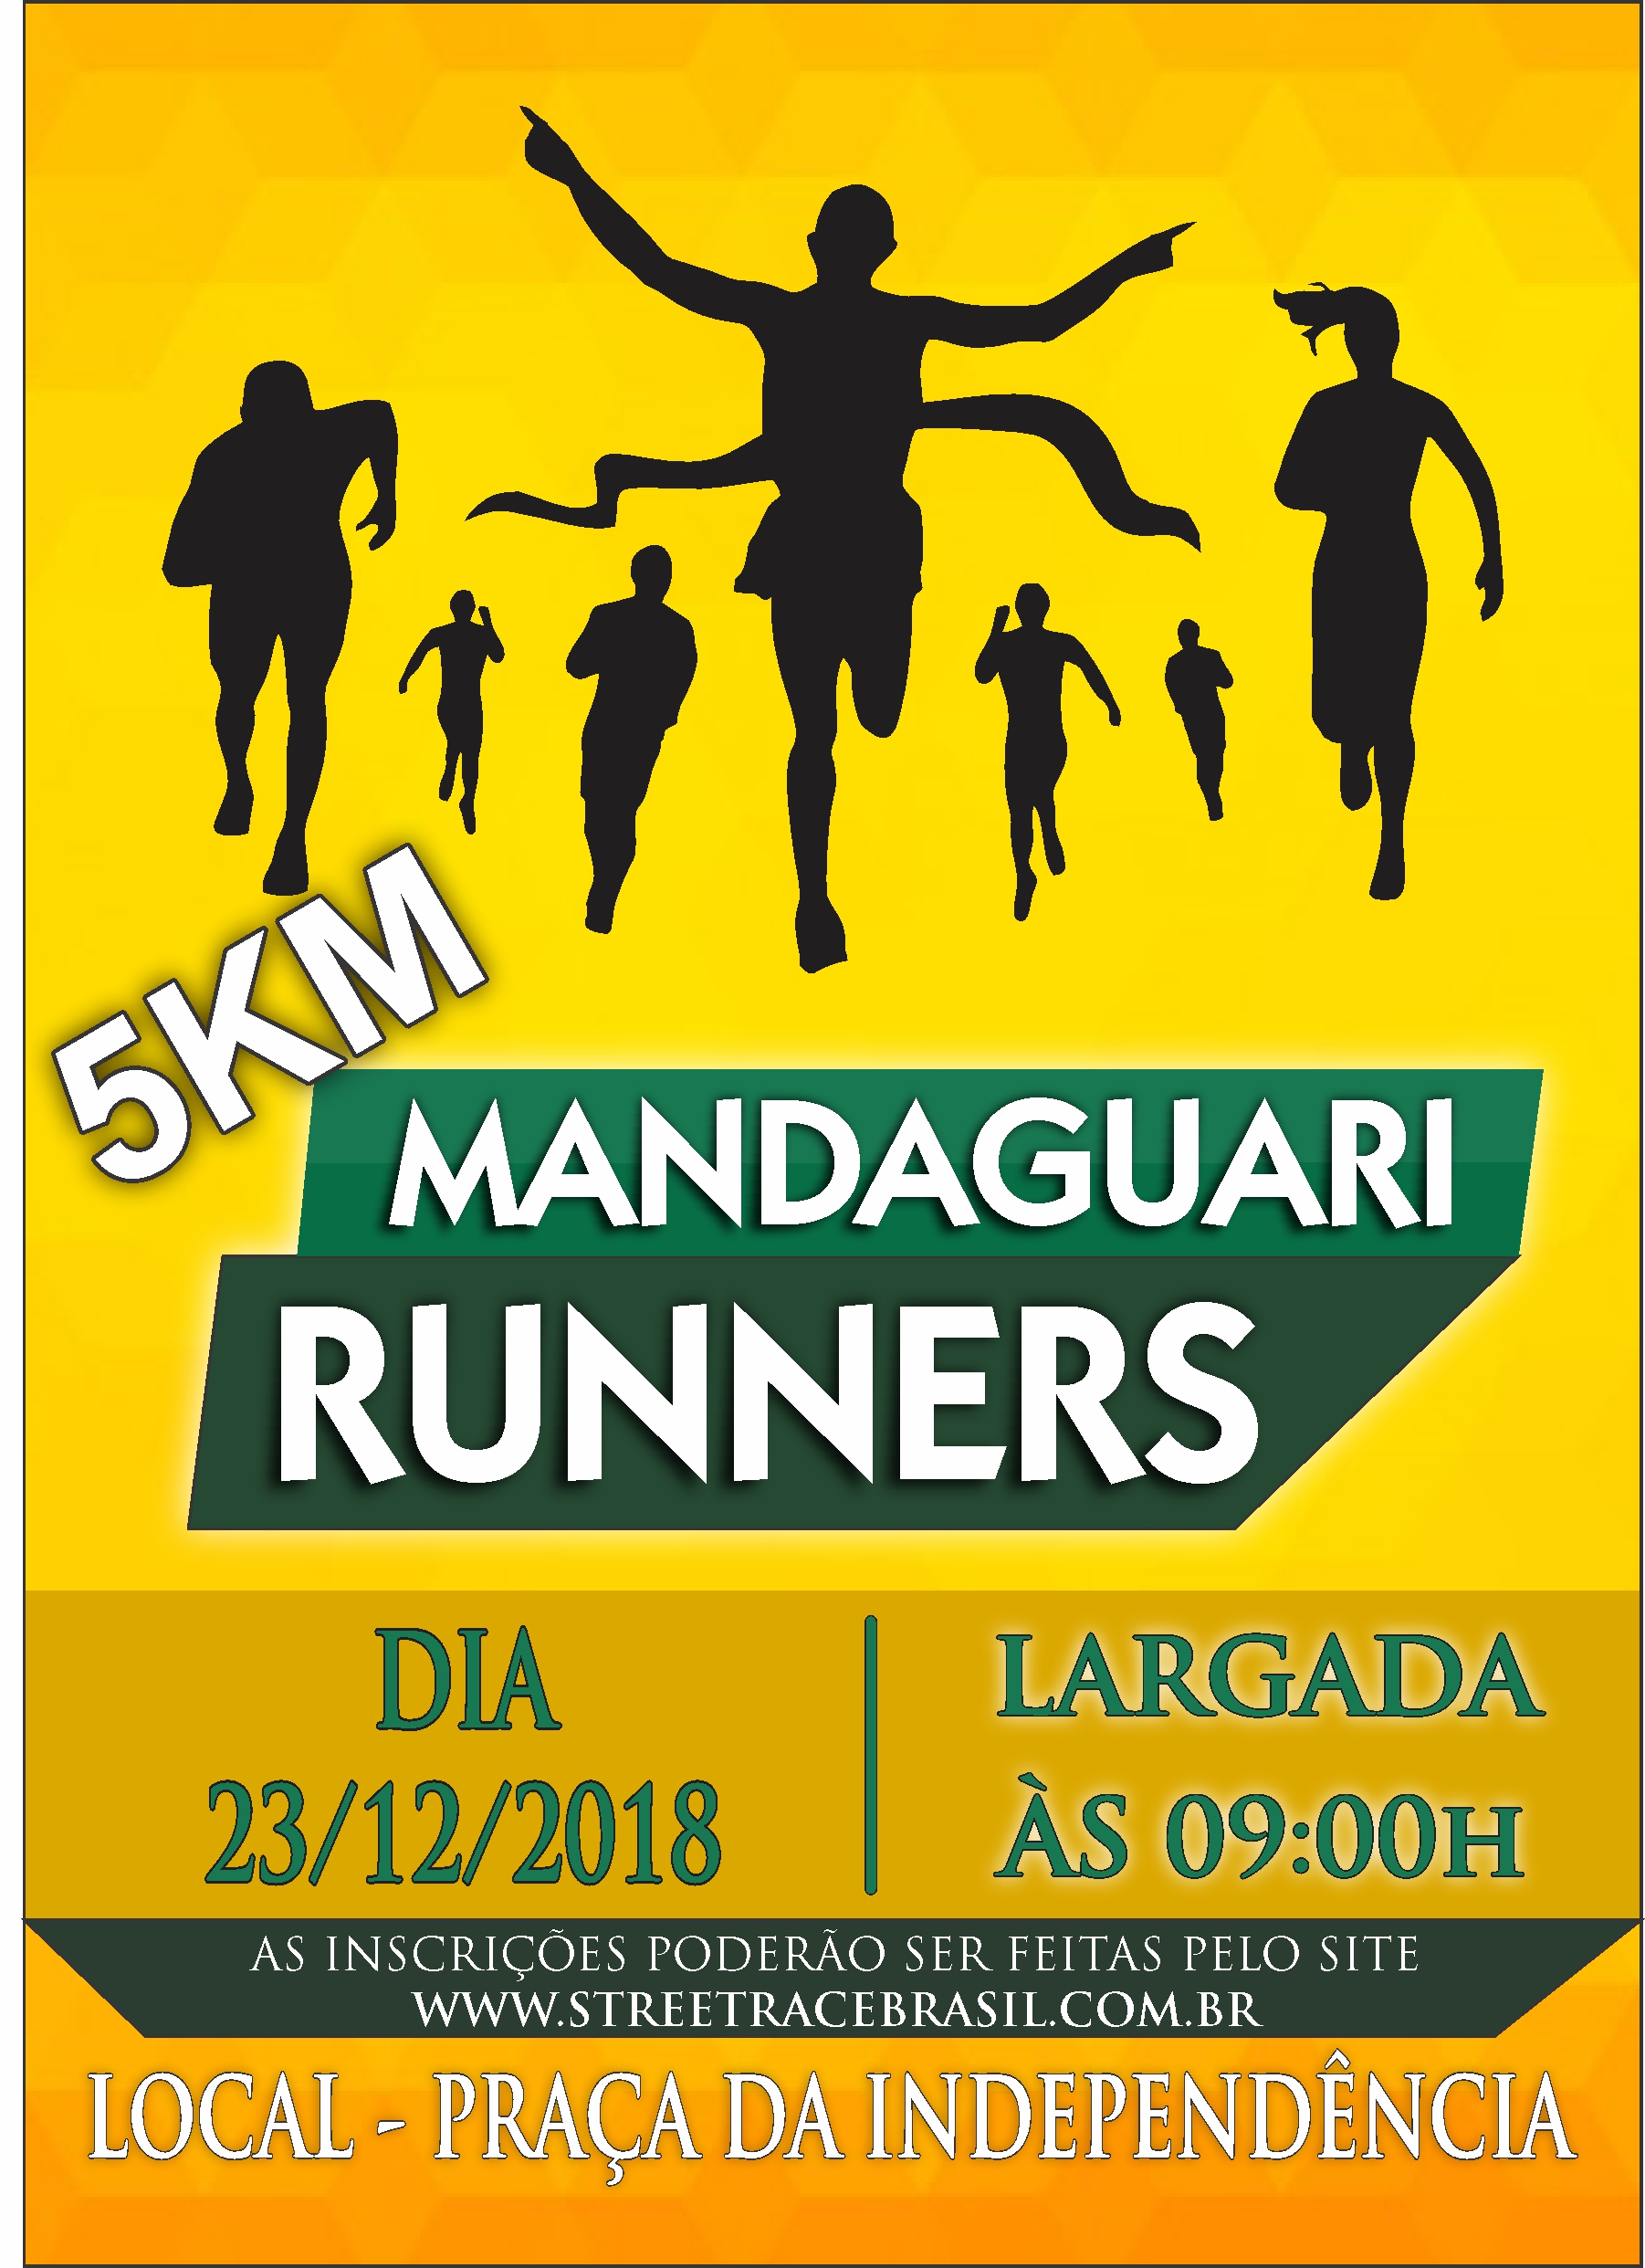 MANDAGUARI RUNNERS